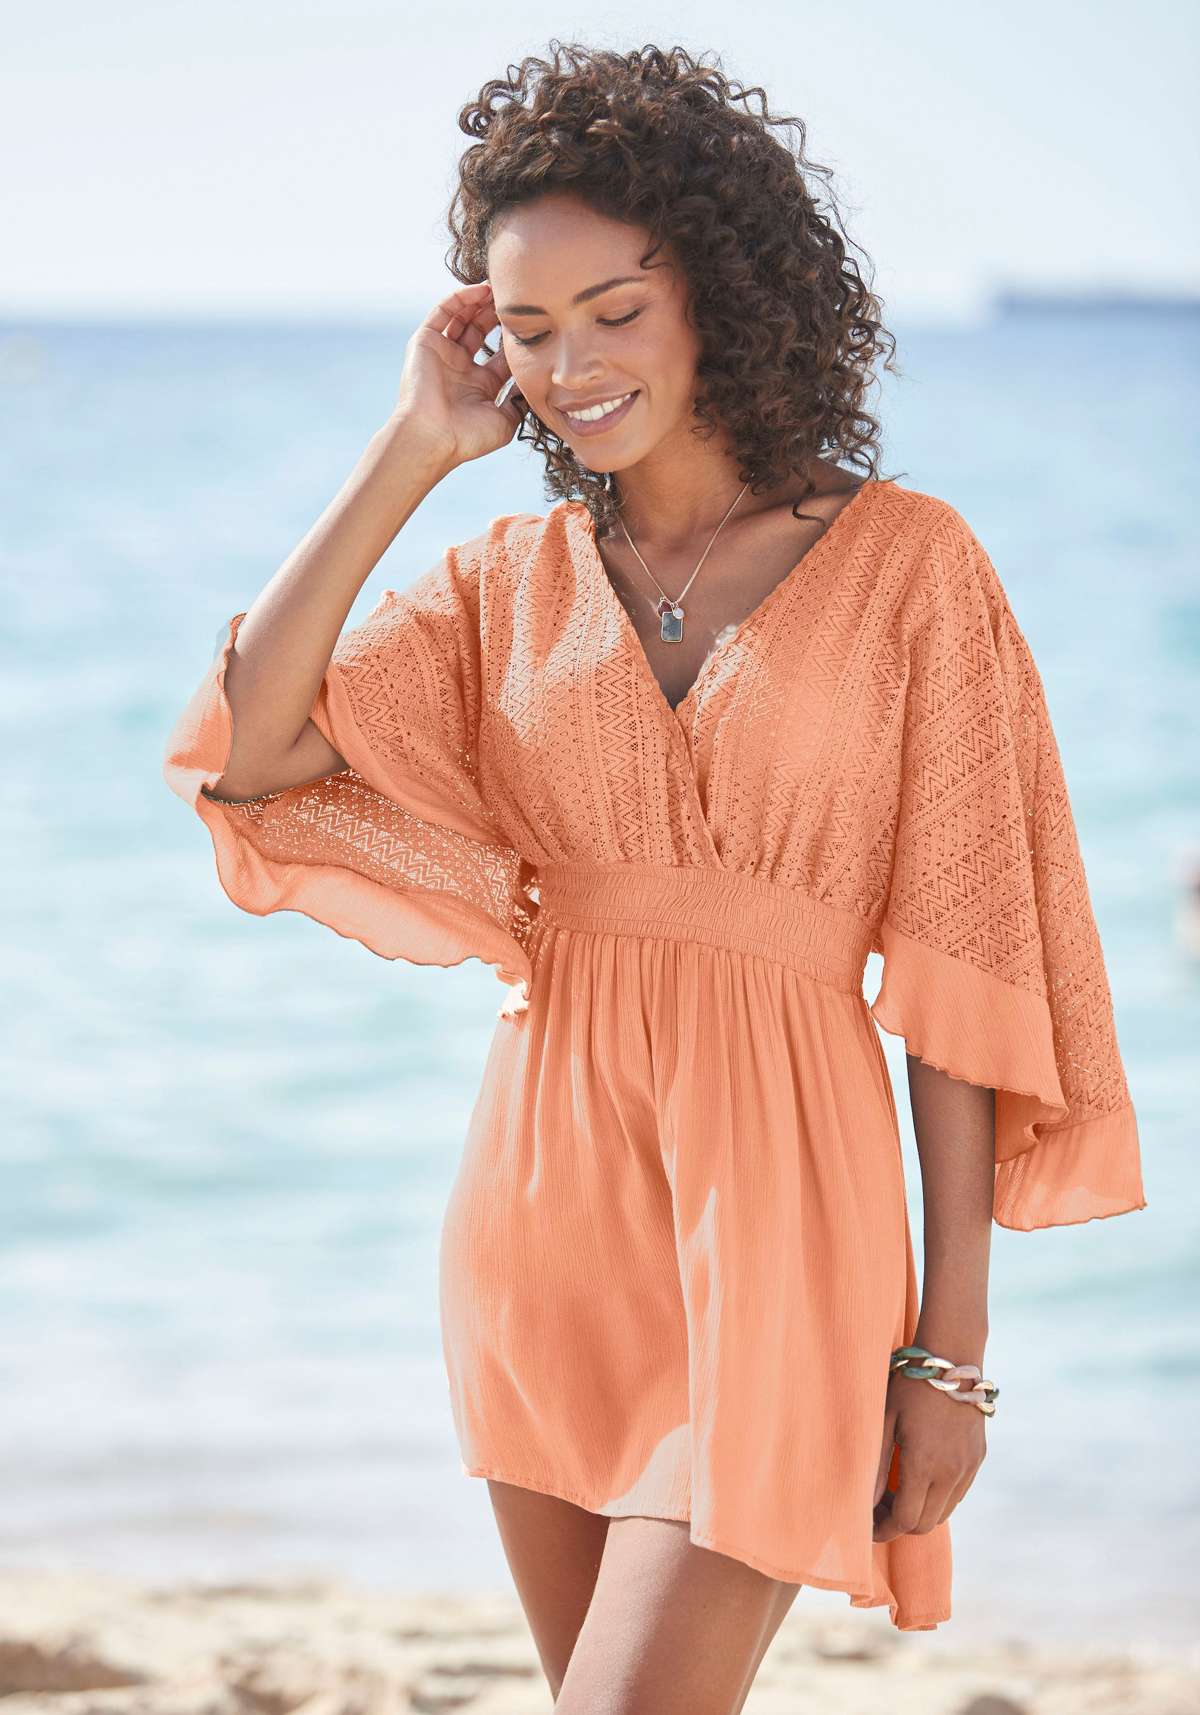 Платье-туника, с широкими рукавами, из кружева, платье-блузка, пляжная одежда.